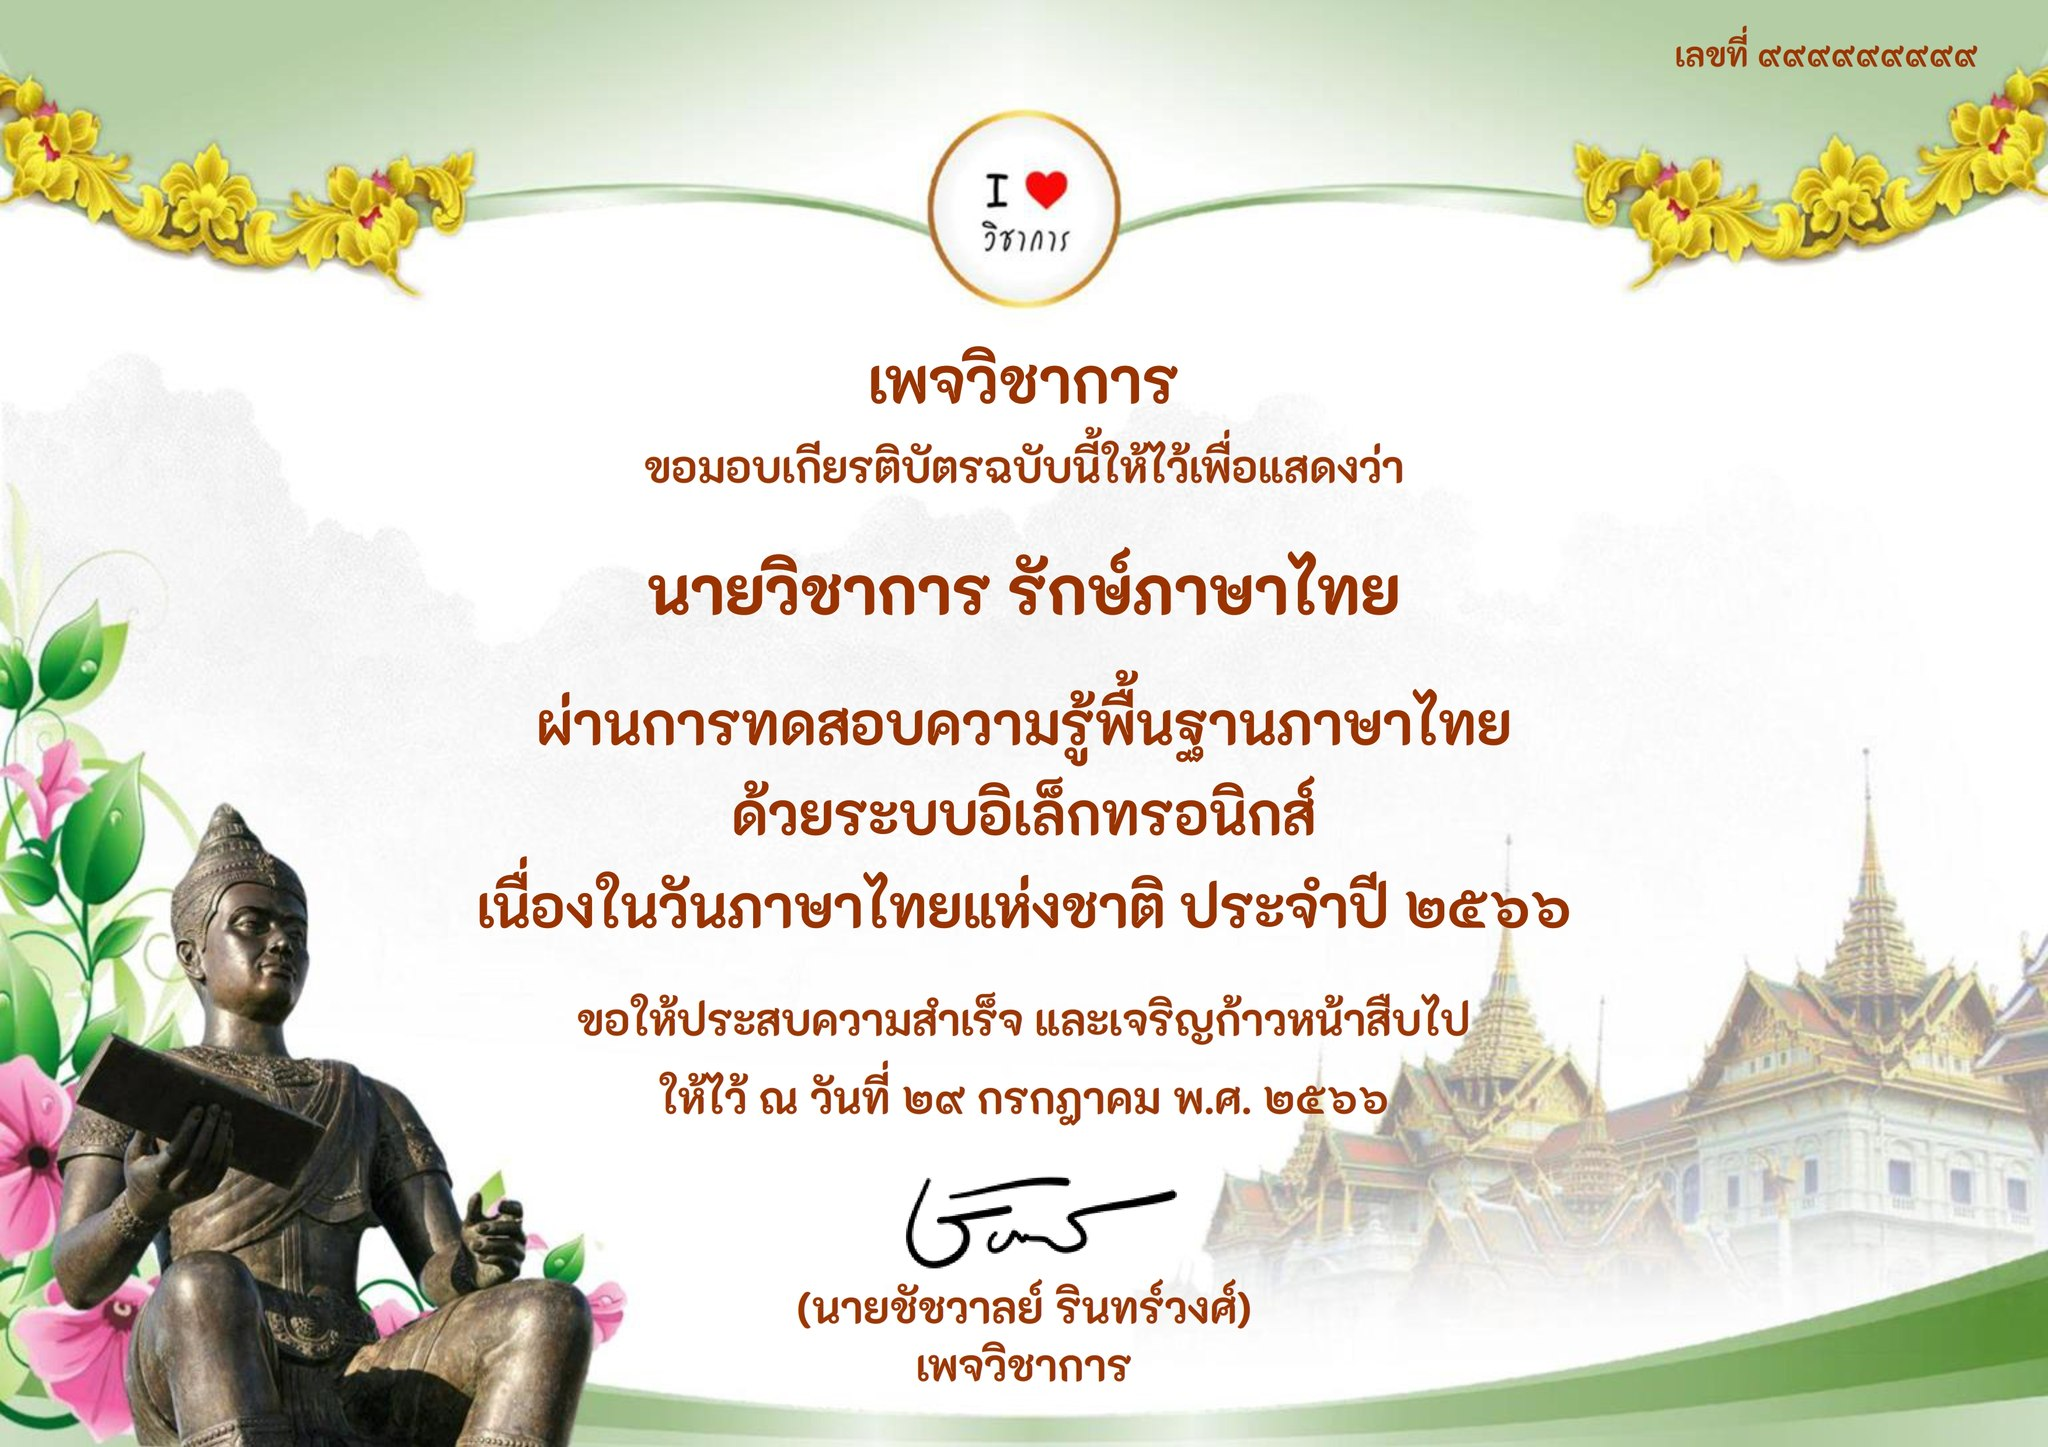 แบบทดสอบความรู้พื้นฐานภาษาไทย "วันภาษาไทยแห่งชาติ" ประจำปี ๒๕๖๖ ผ่านเกณฑ์ ๗๐% รับเกียรติบัตรฟรี